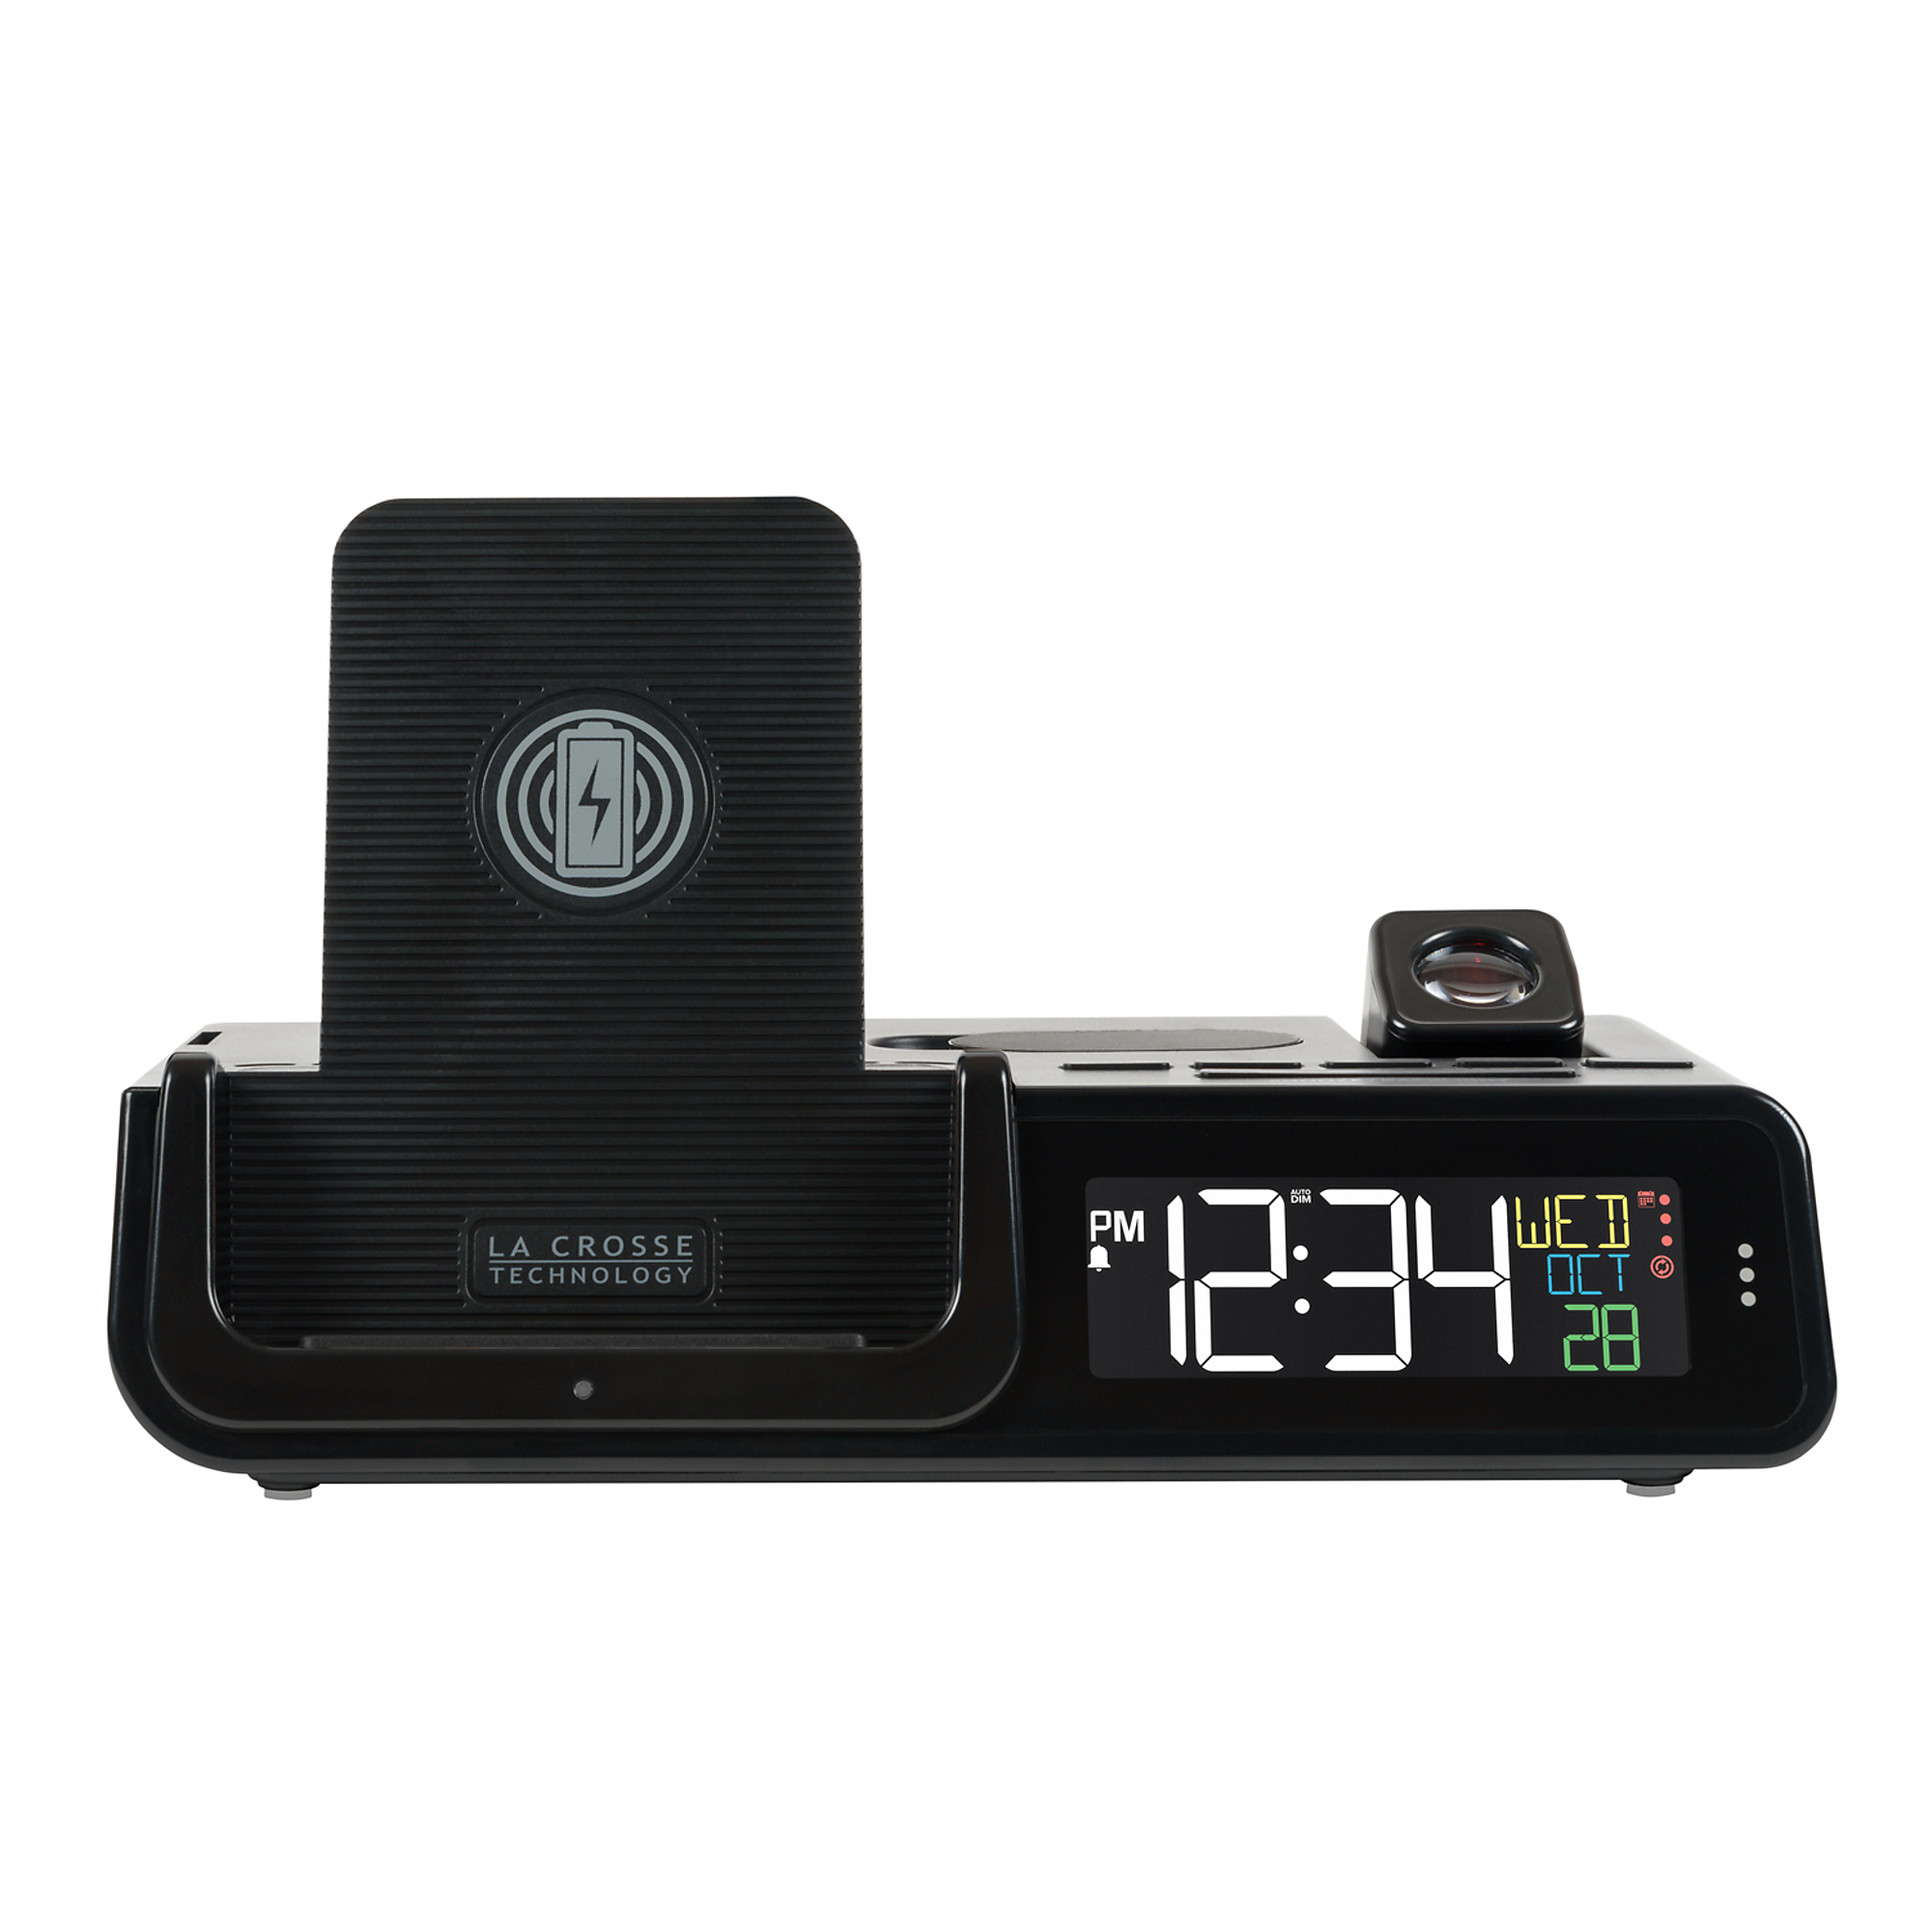 LaCrosse Technology, WATTZ 2.0 Projection Alarm Clock, Model C75709-INT